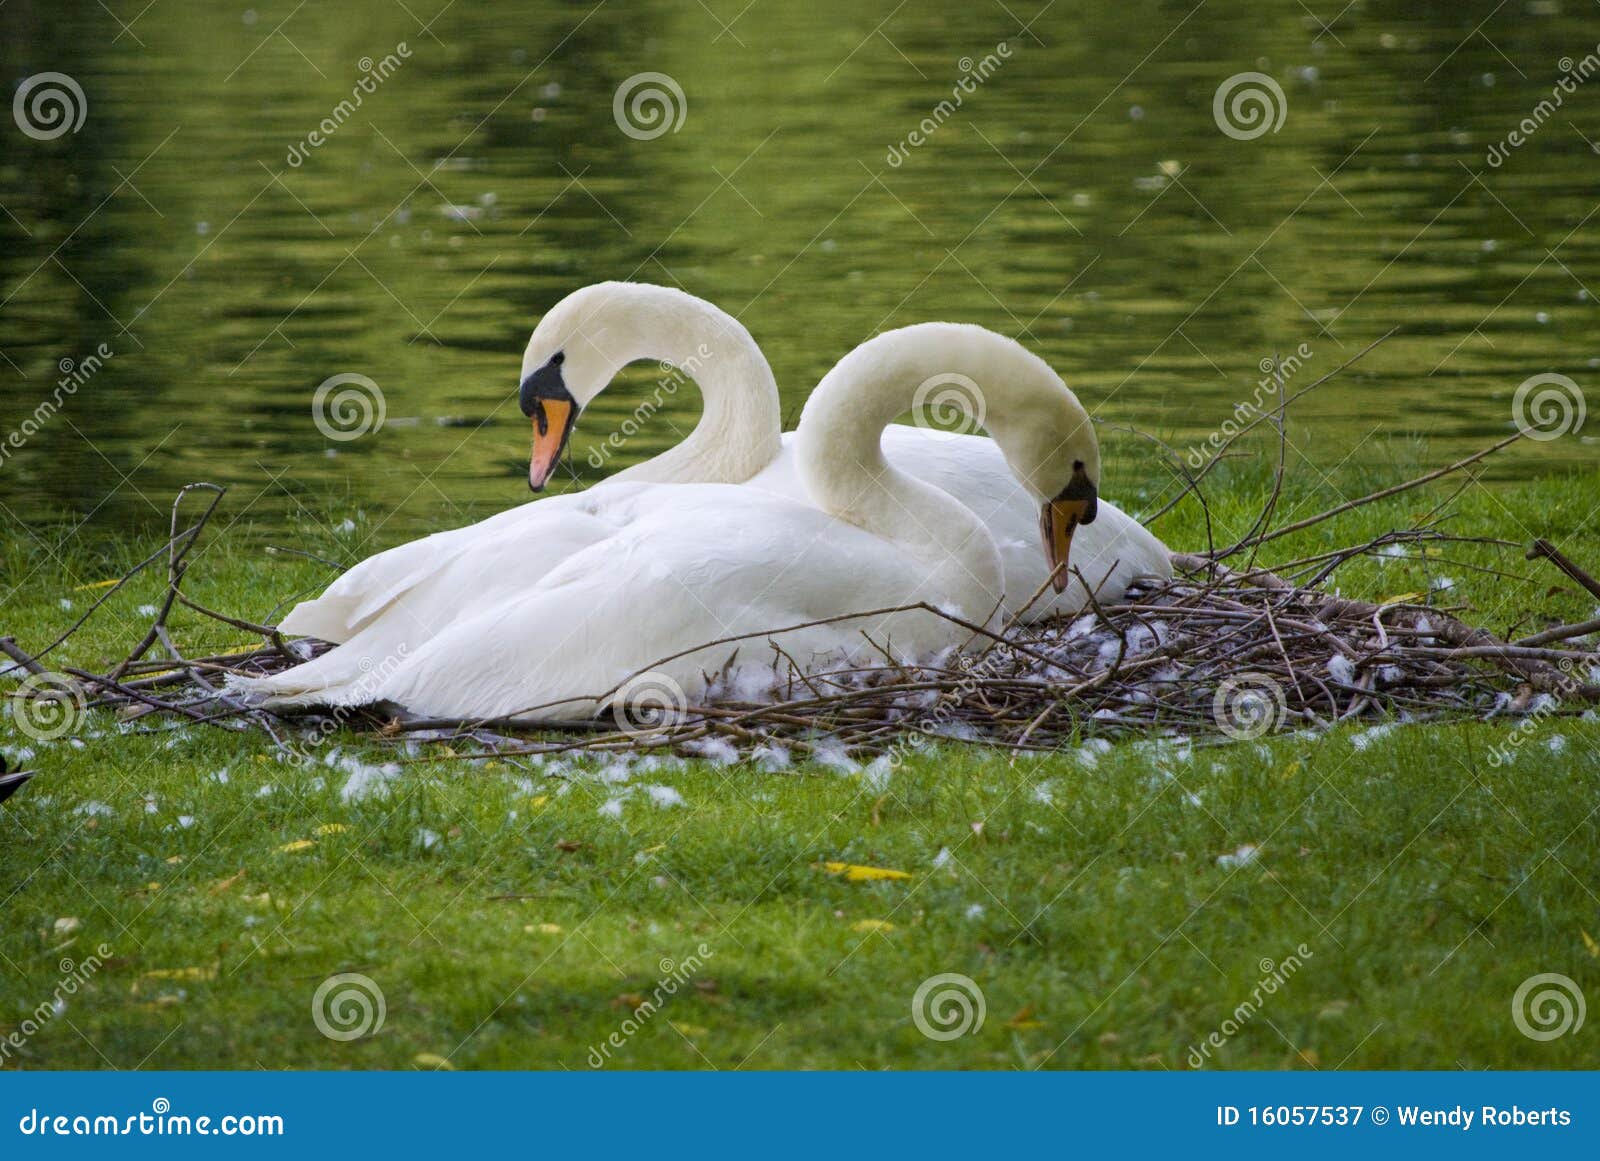 嵌套天鹅. 他们背景天鹅座优美的草绿色生活伙伴喑哑嵌套olor池塘的天鹅